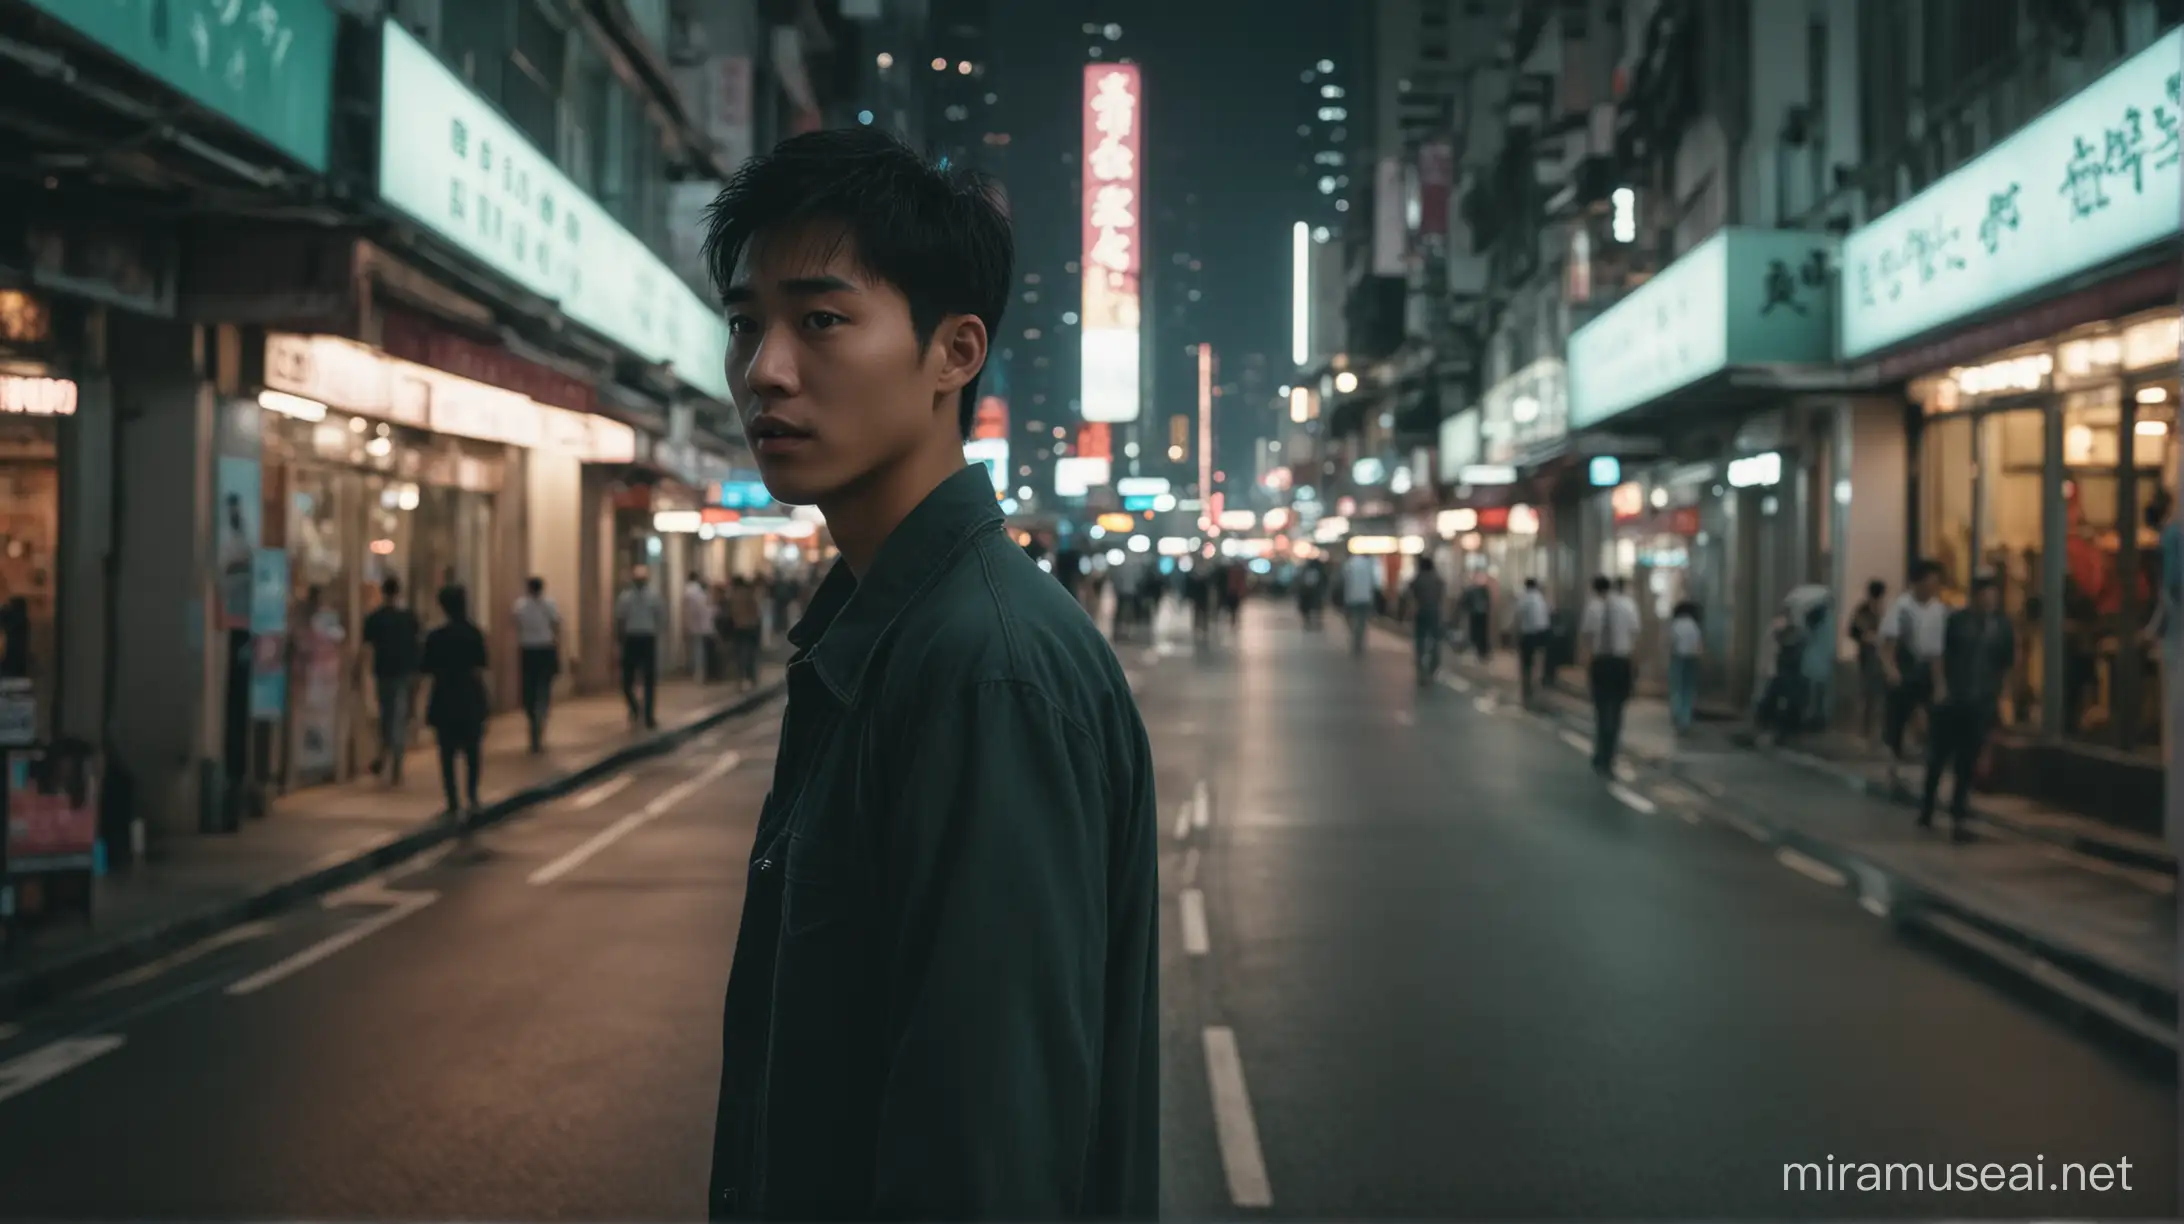 Urban Wanderlust Night Stroll Through Hong Kong Streets